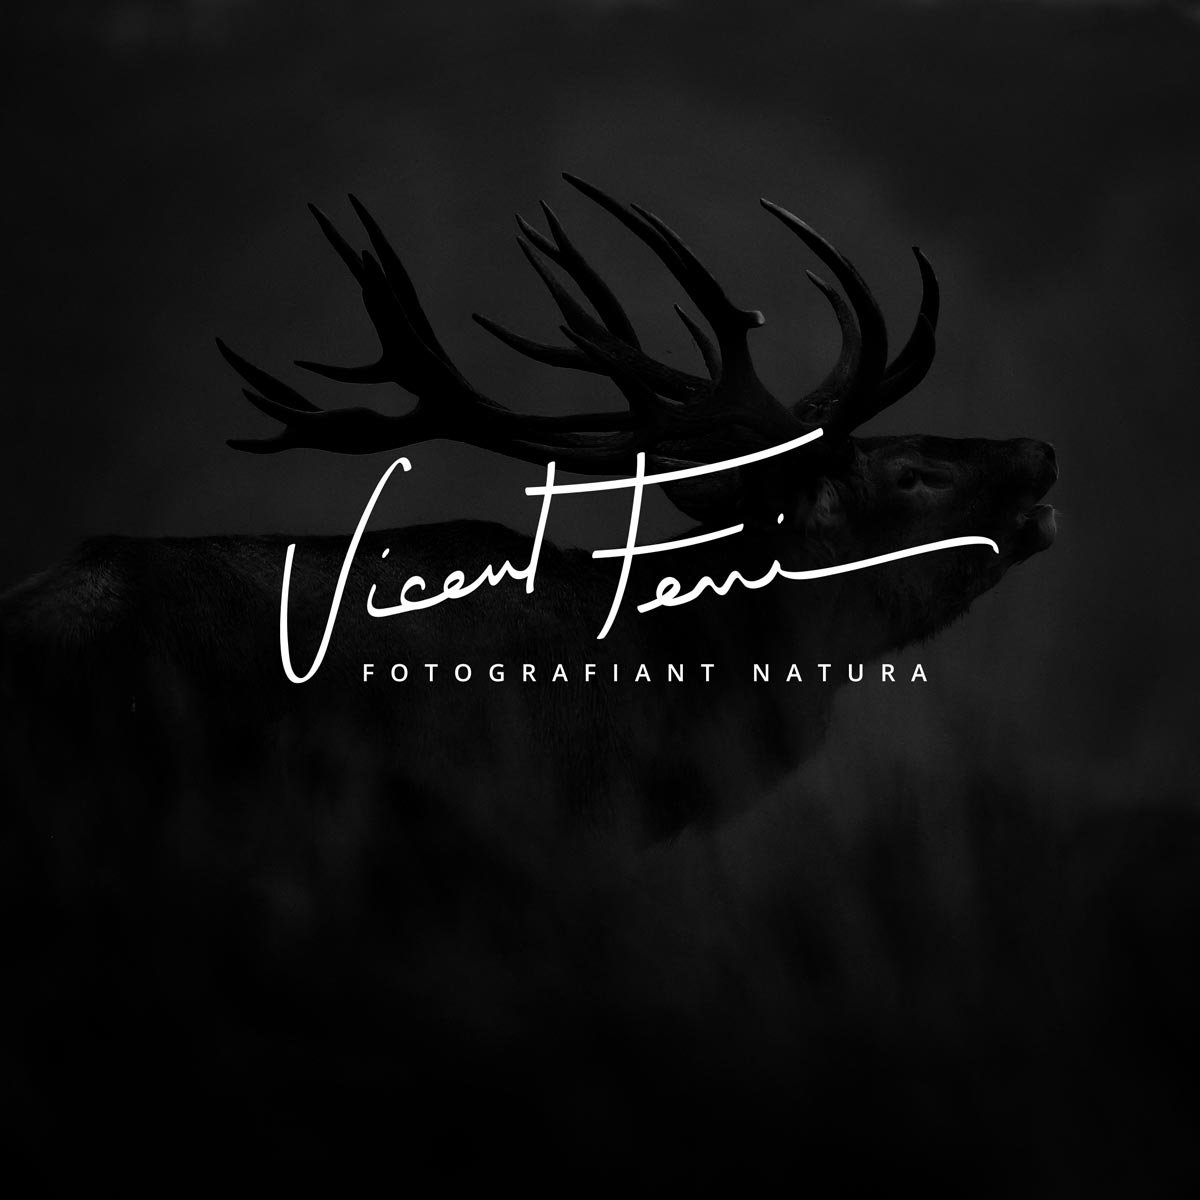 Indomada-studio-fotografia-naturaleza-wildlife-diseño-logo-firma-vicent-ferri.jpg